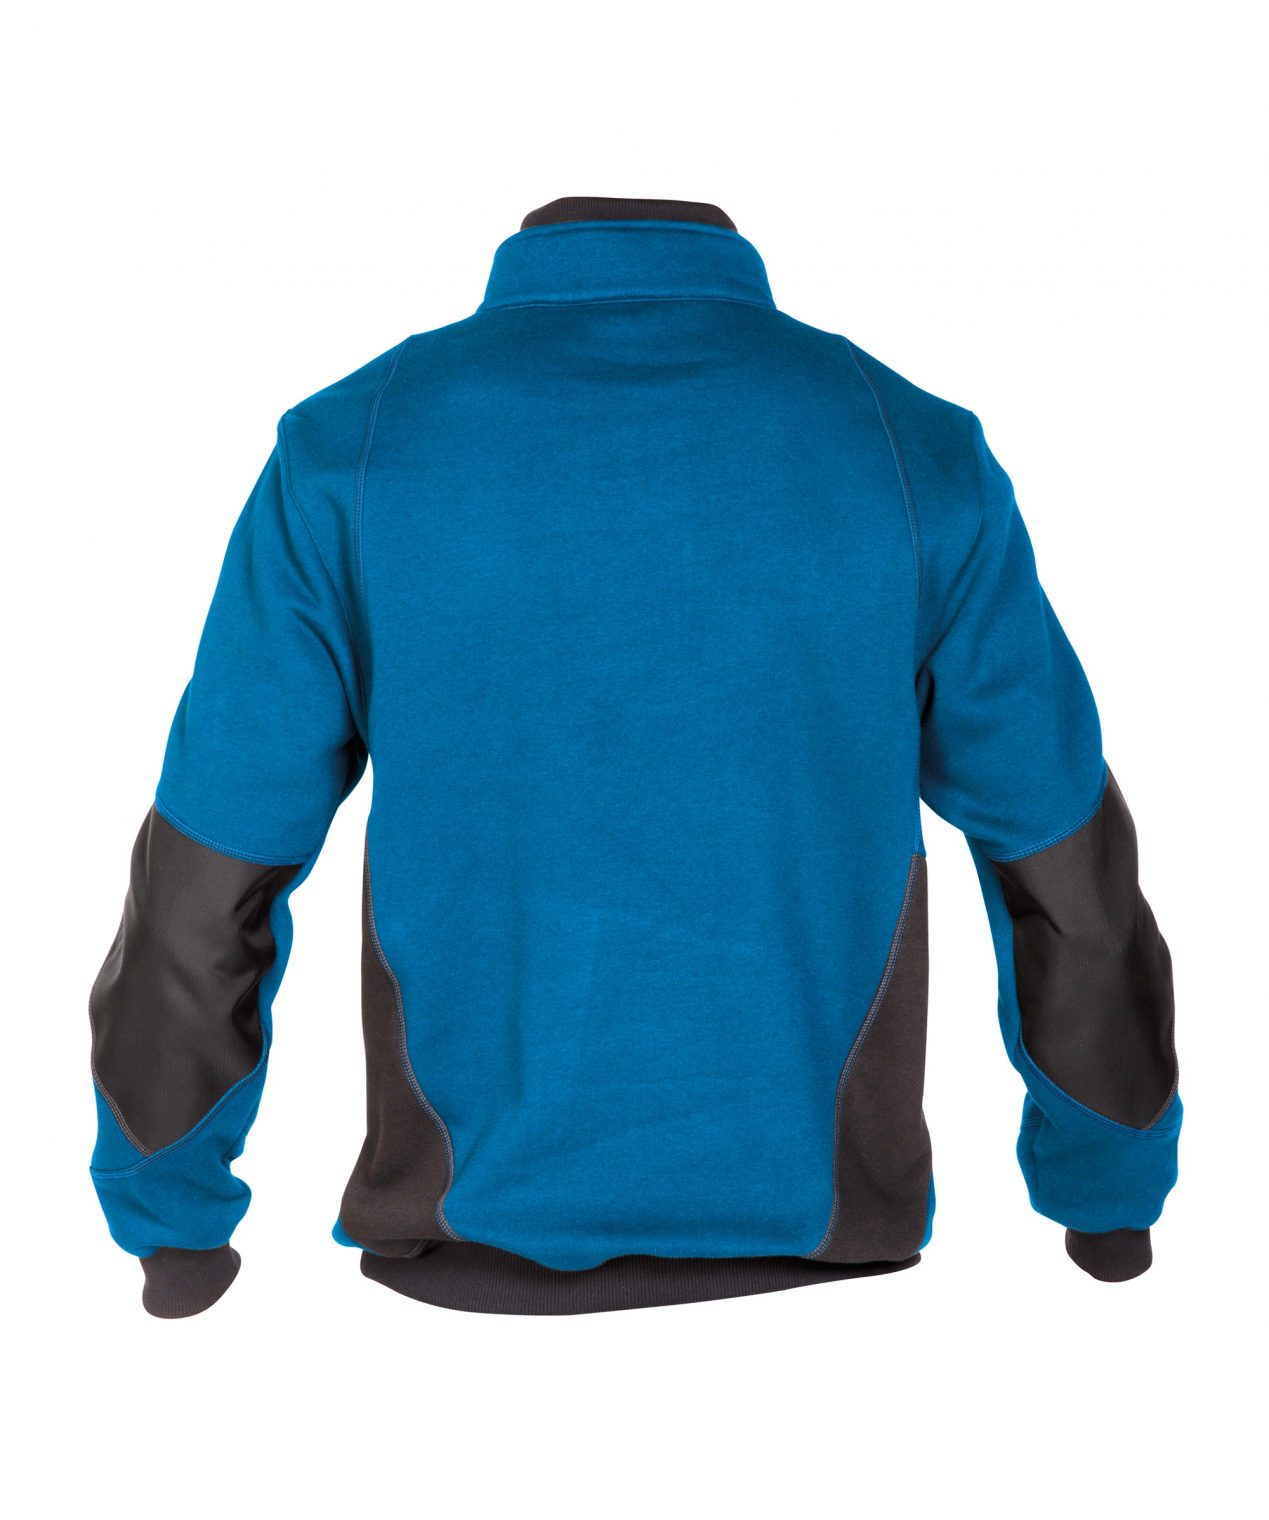 stellar sweatshirt azure blue anthracite grey back